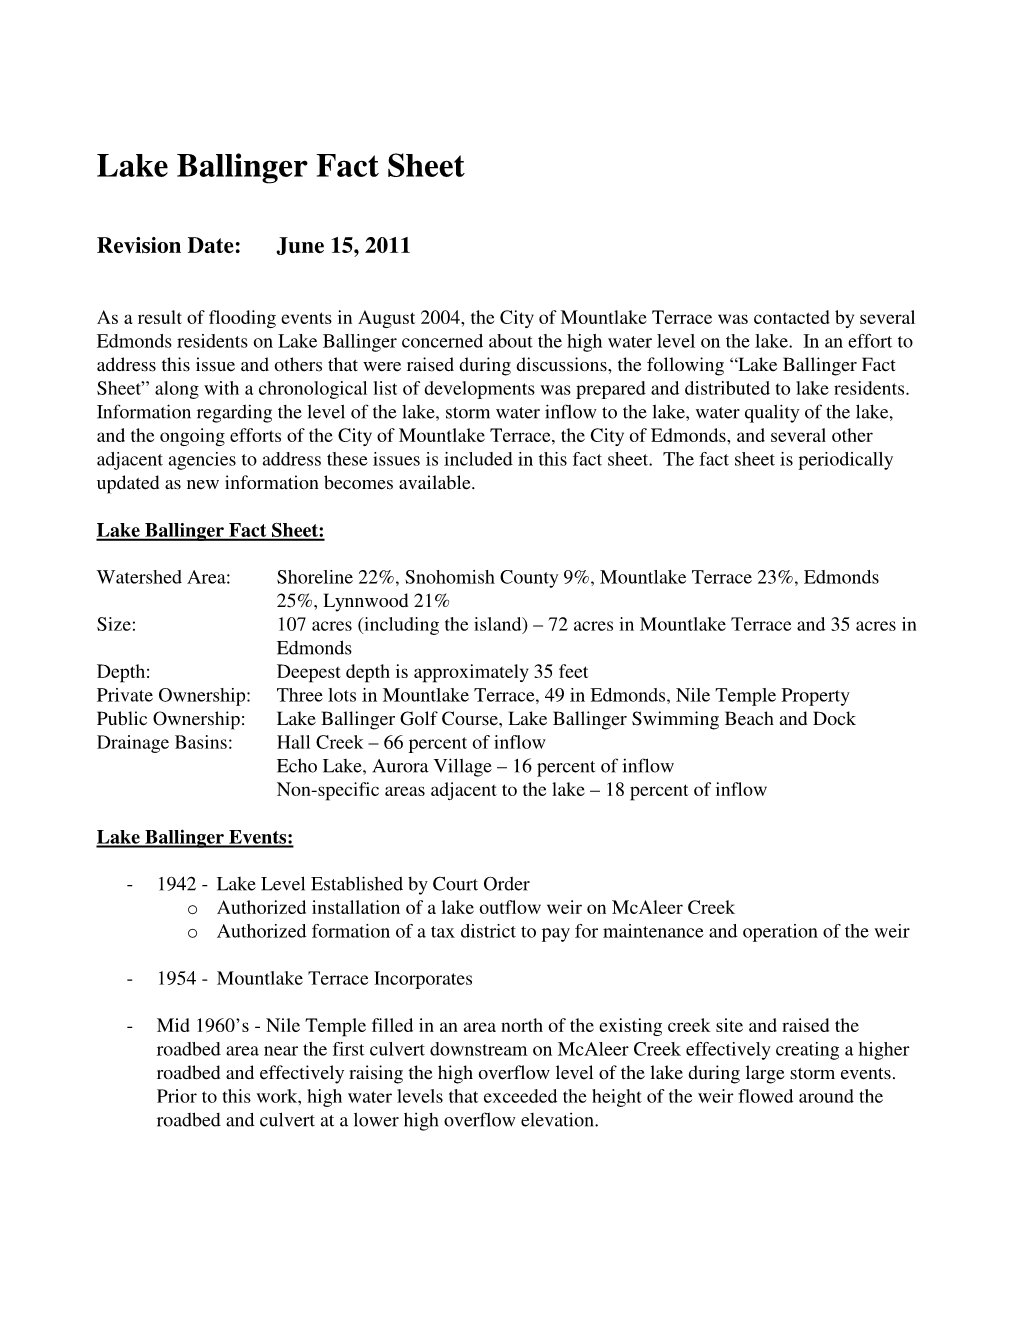 Lake Ballinger Fact Sheet 2011